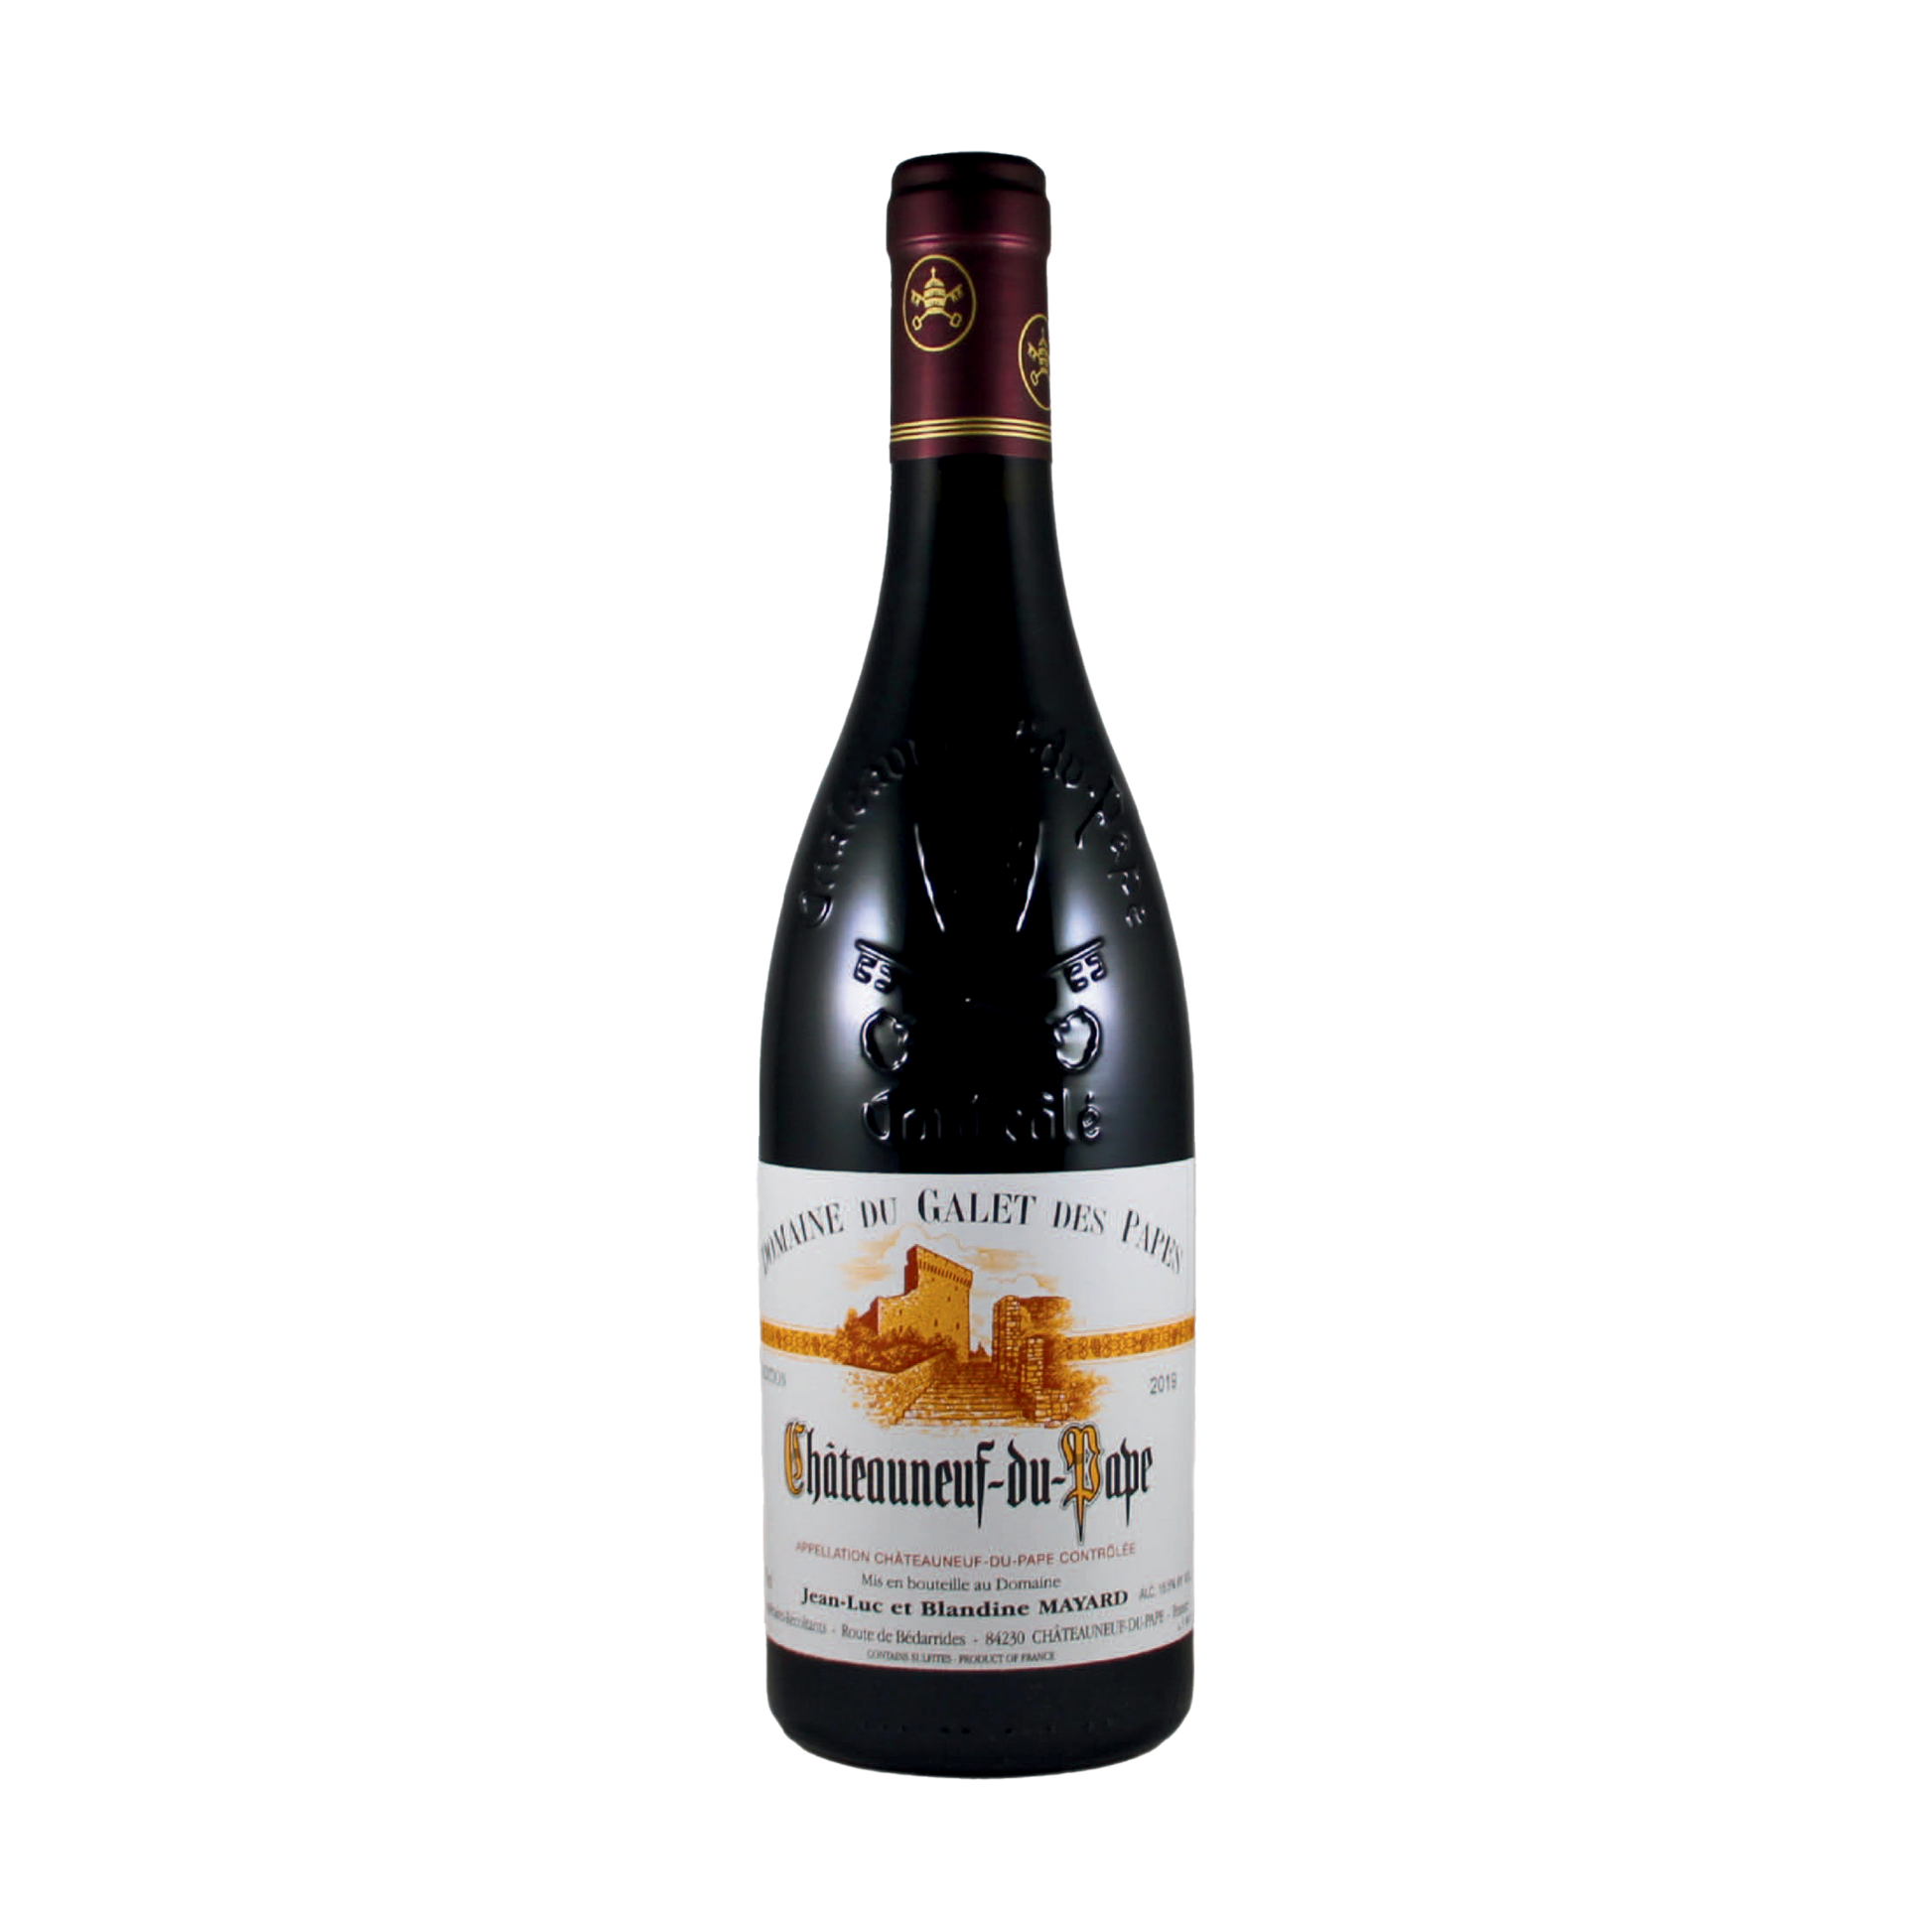 A bottle of Domaine du Galet des Papes 2019 Chateauneuf du Pape